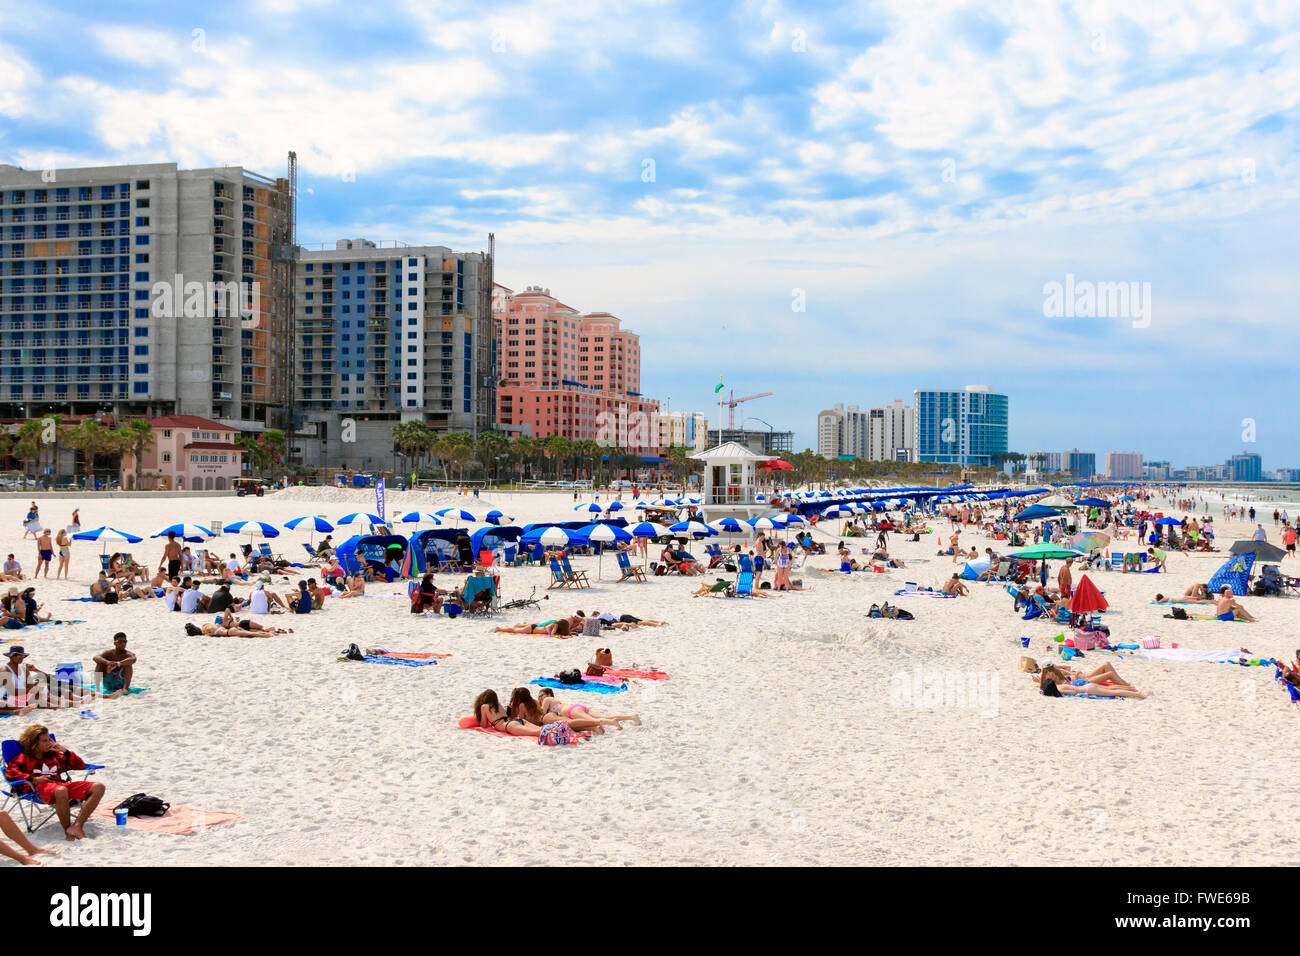 La plage de Clearwater, en Floride, avec des hôtels nord Banque D'Images